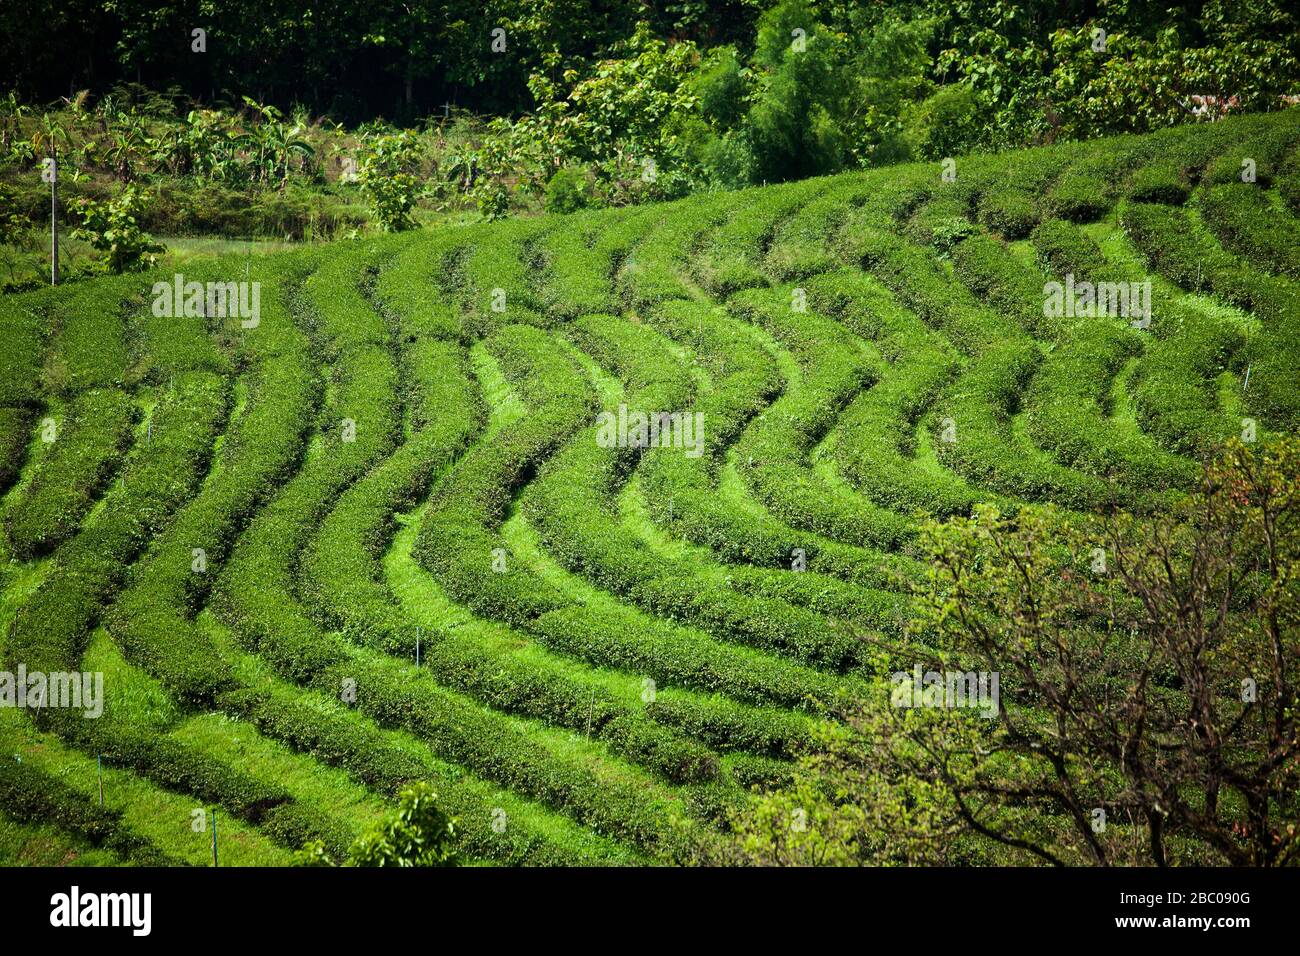 Choui Fong Tea cresce diversi tipi distintivi di tè come Assum, Green, Oolong e Black Tea nelle Highlands ad un'altitudine di circa 1200 mtres. Foto Stock